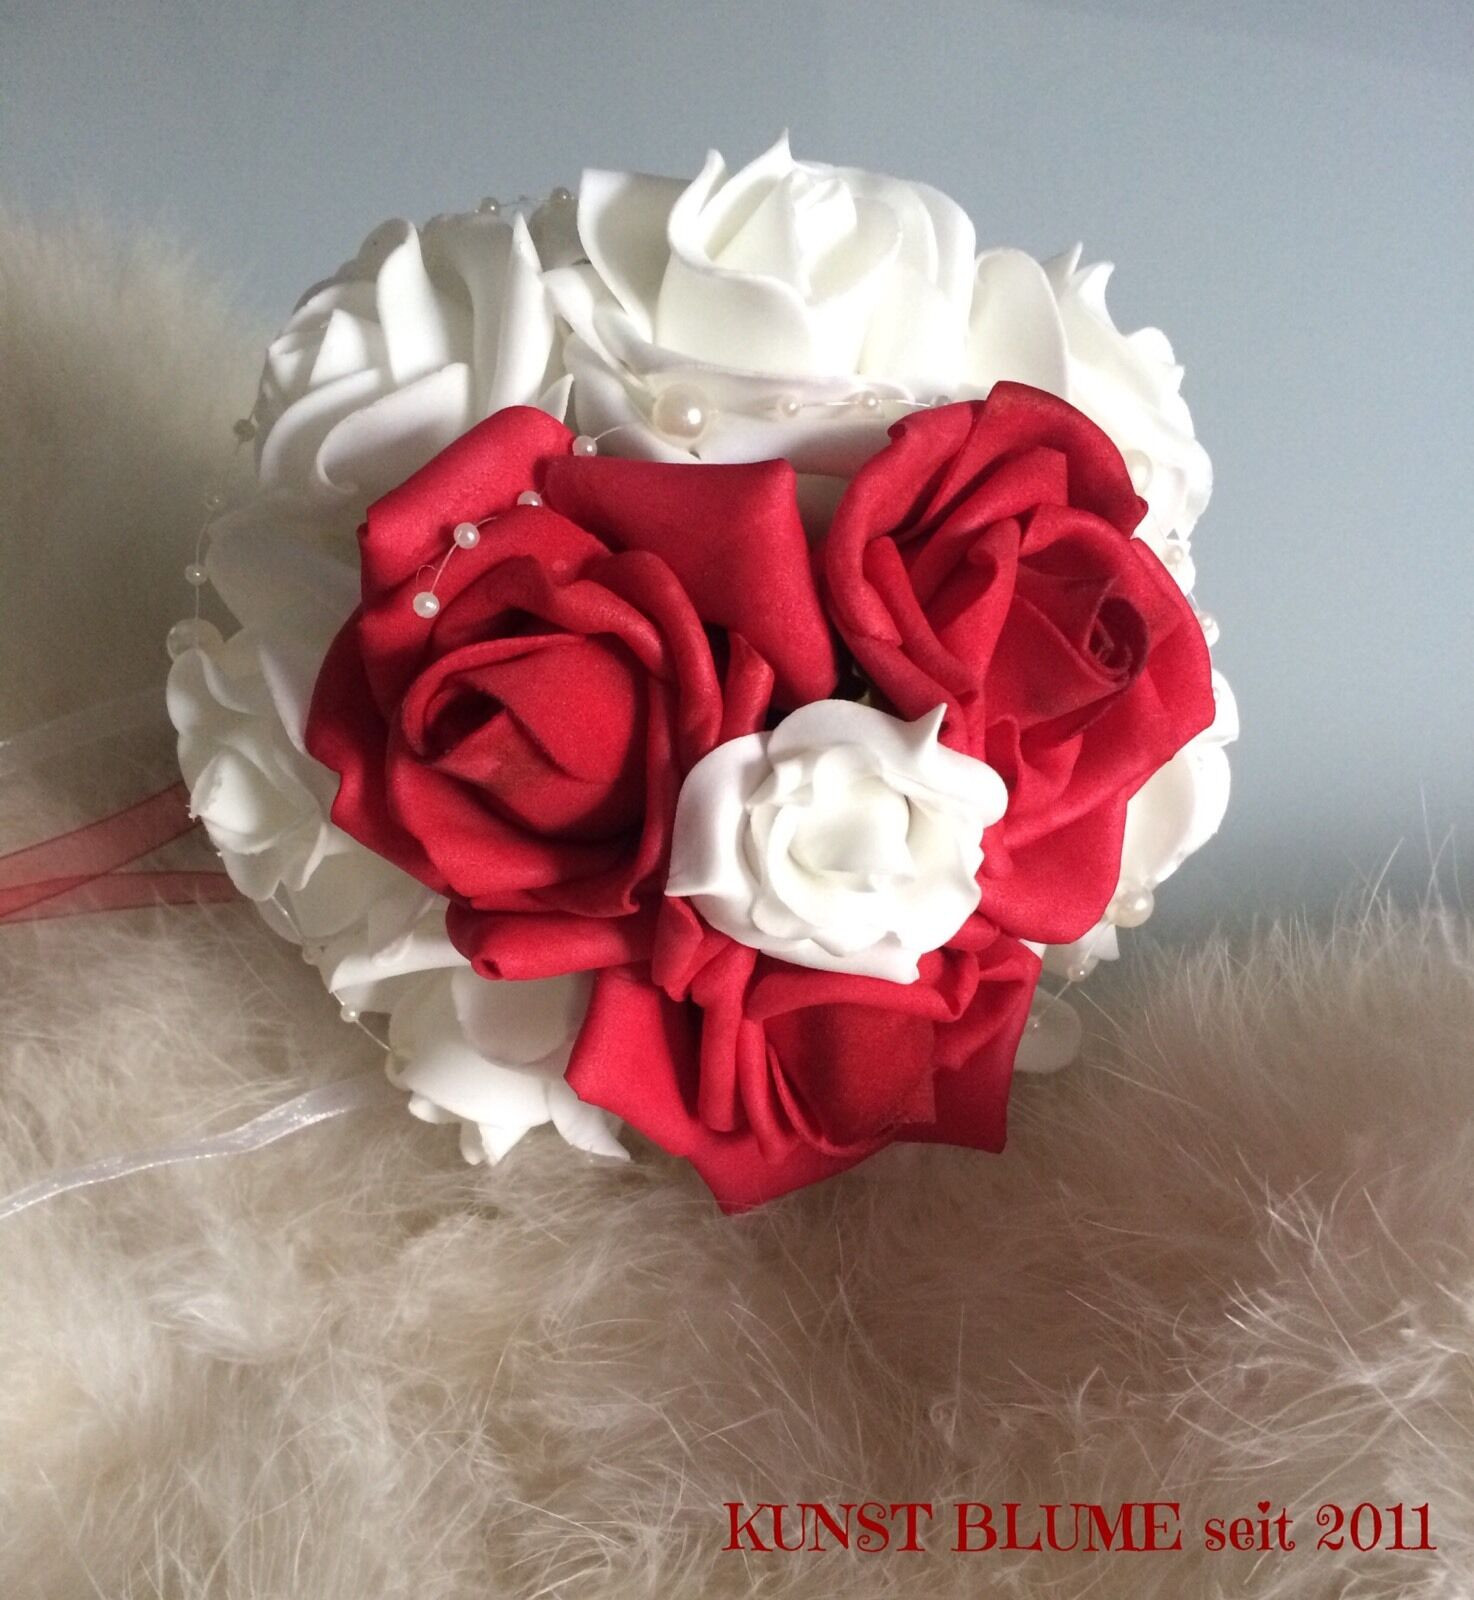 Kleiner Brautstrauß Standesamt
 KLEINER Brautstrauß Wurfstrauß Standesamt Rosen rot weiß